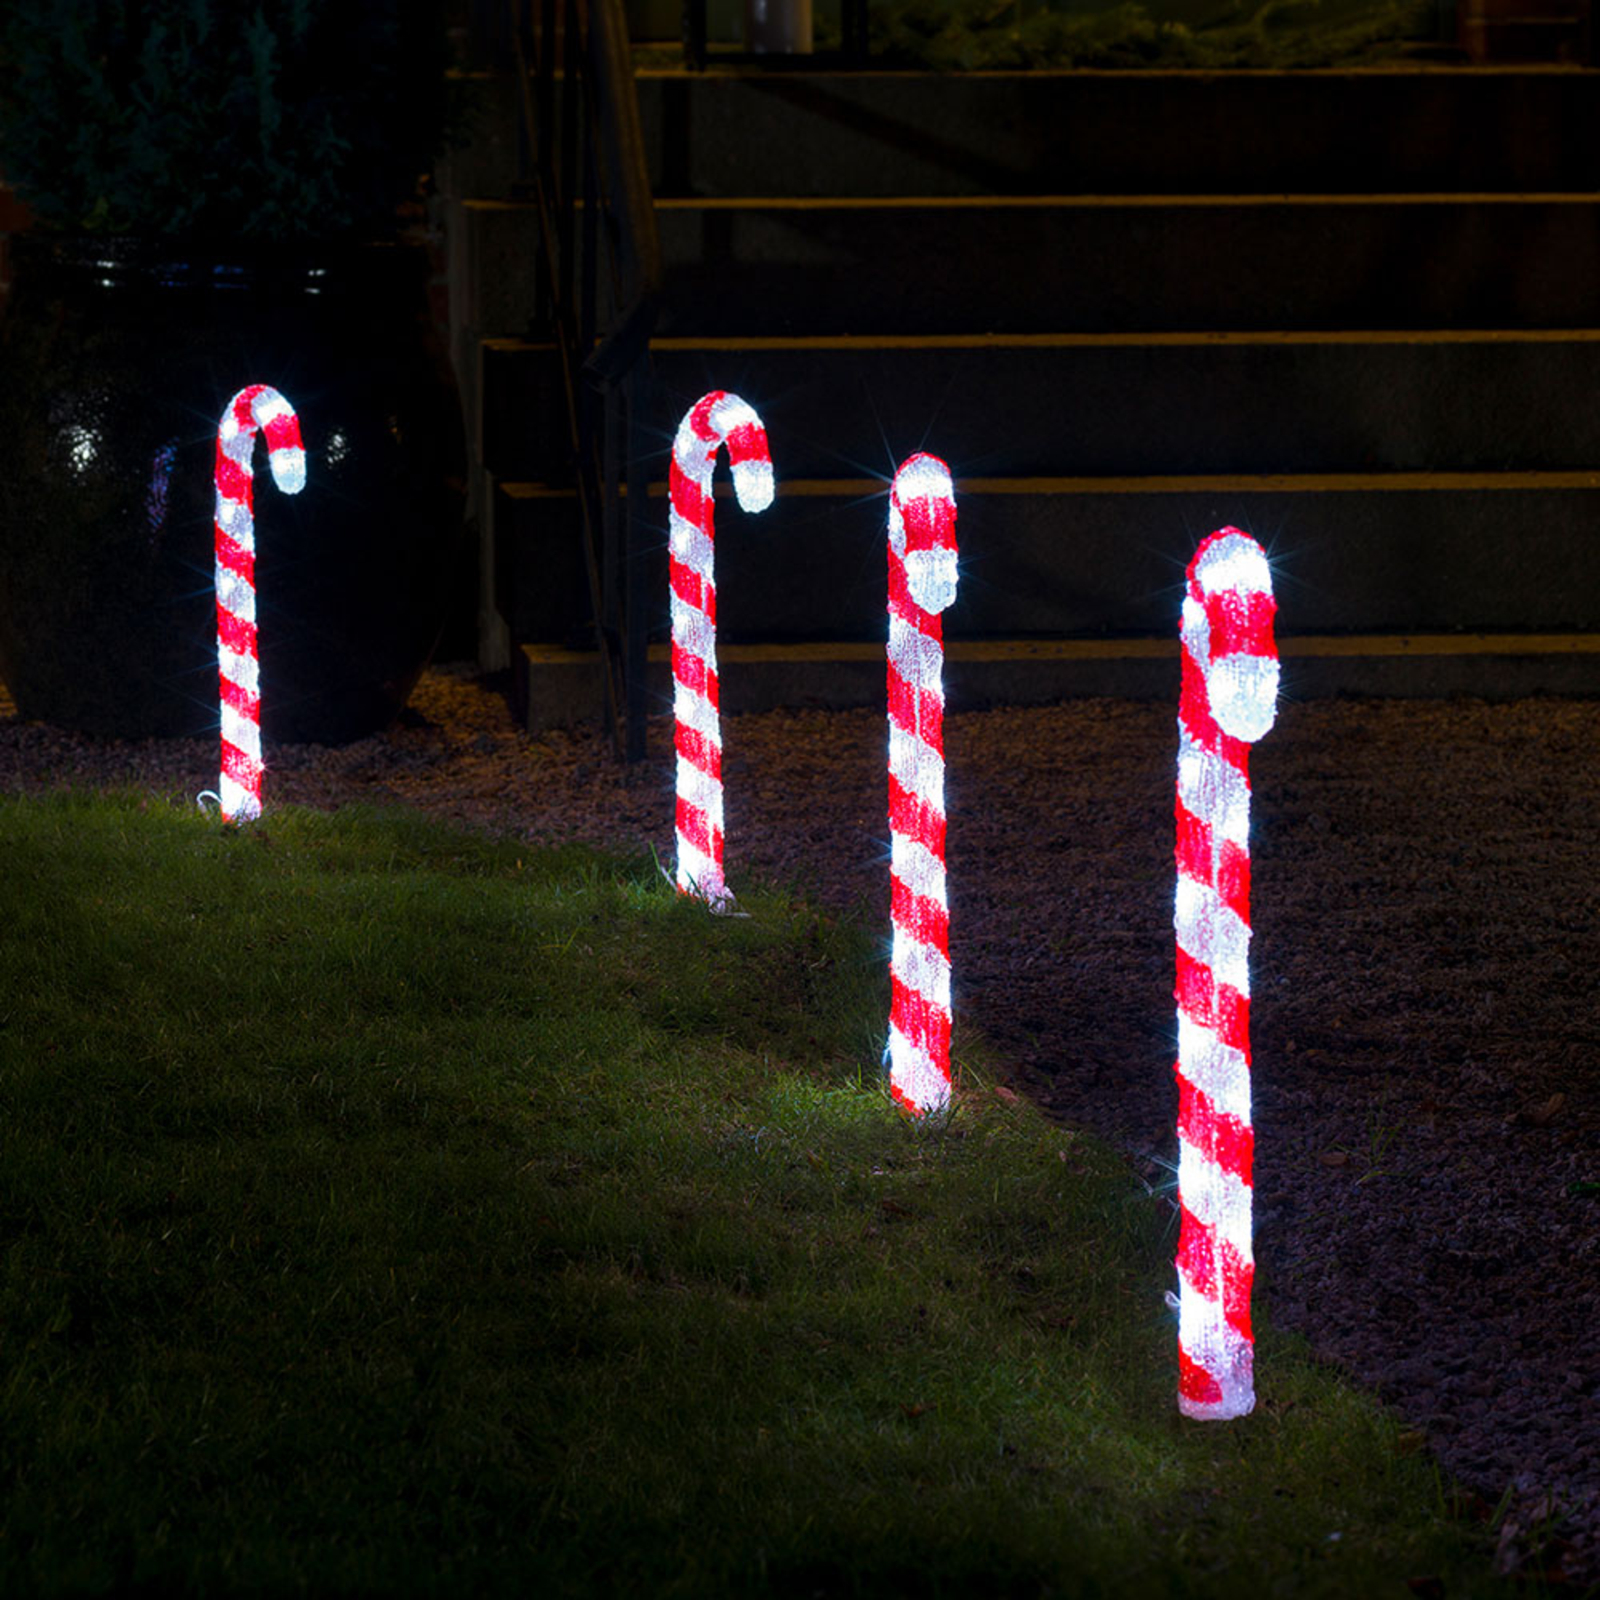 A-A 4 Pezzi LED Luminosi Bastoncini Zucchero Filato Cono Luminoso Bastoncini per Bambini Grandi Feste Halloween Concerti Natale Coni Luminosi Zucchero Filato A LED 